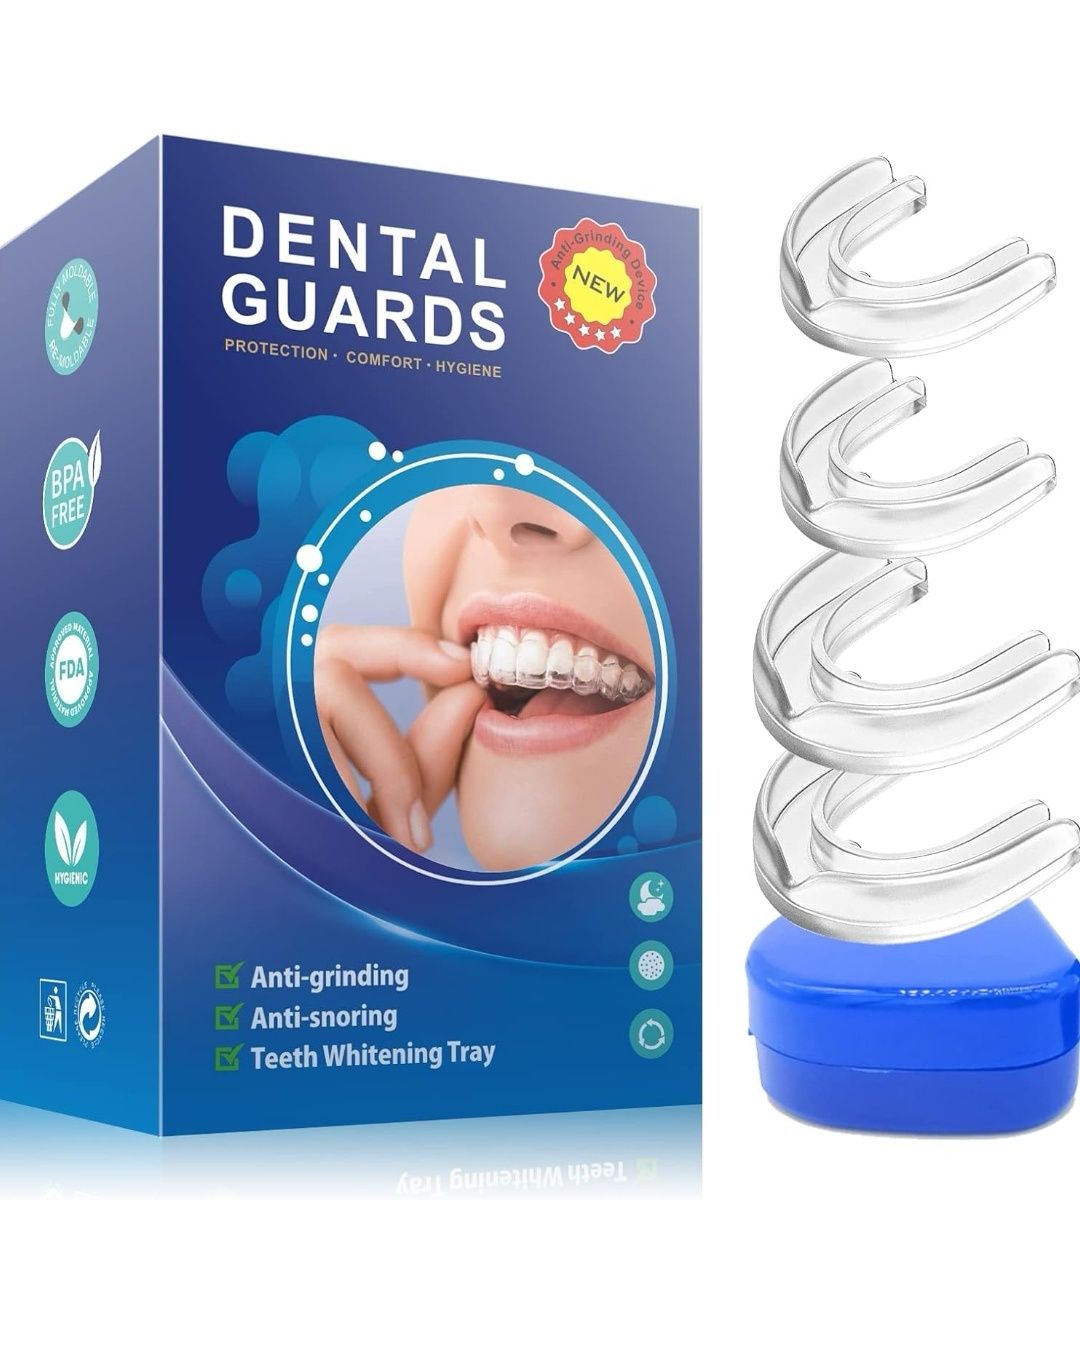 Ochraniacz na usta do zgrzytania zębami